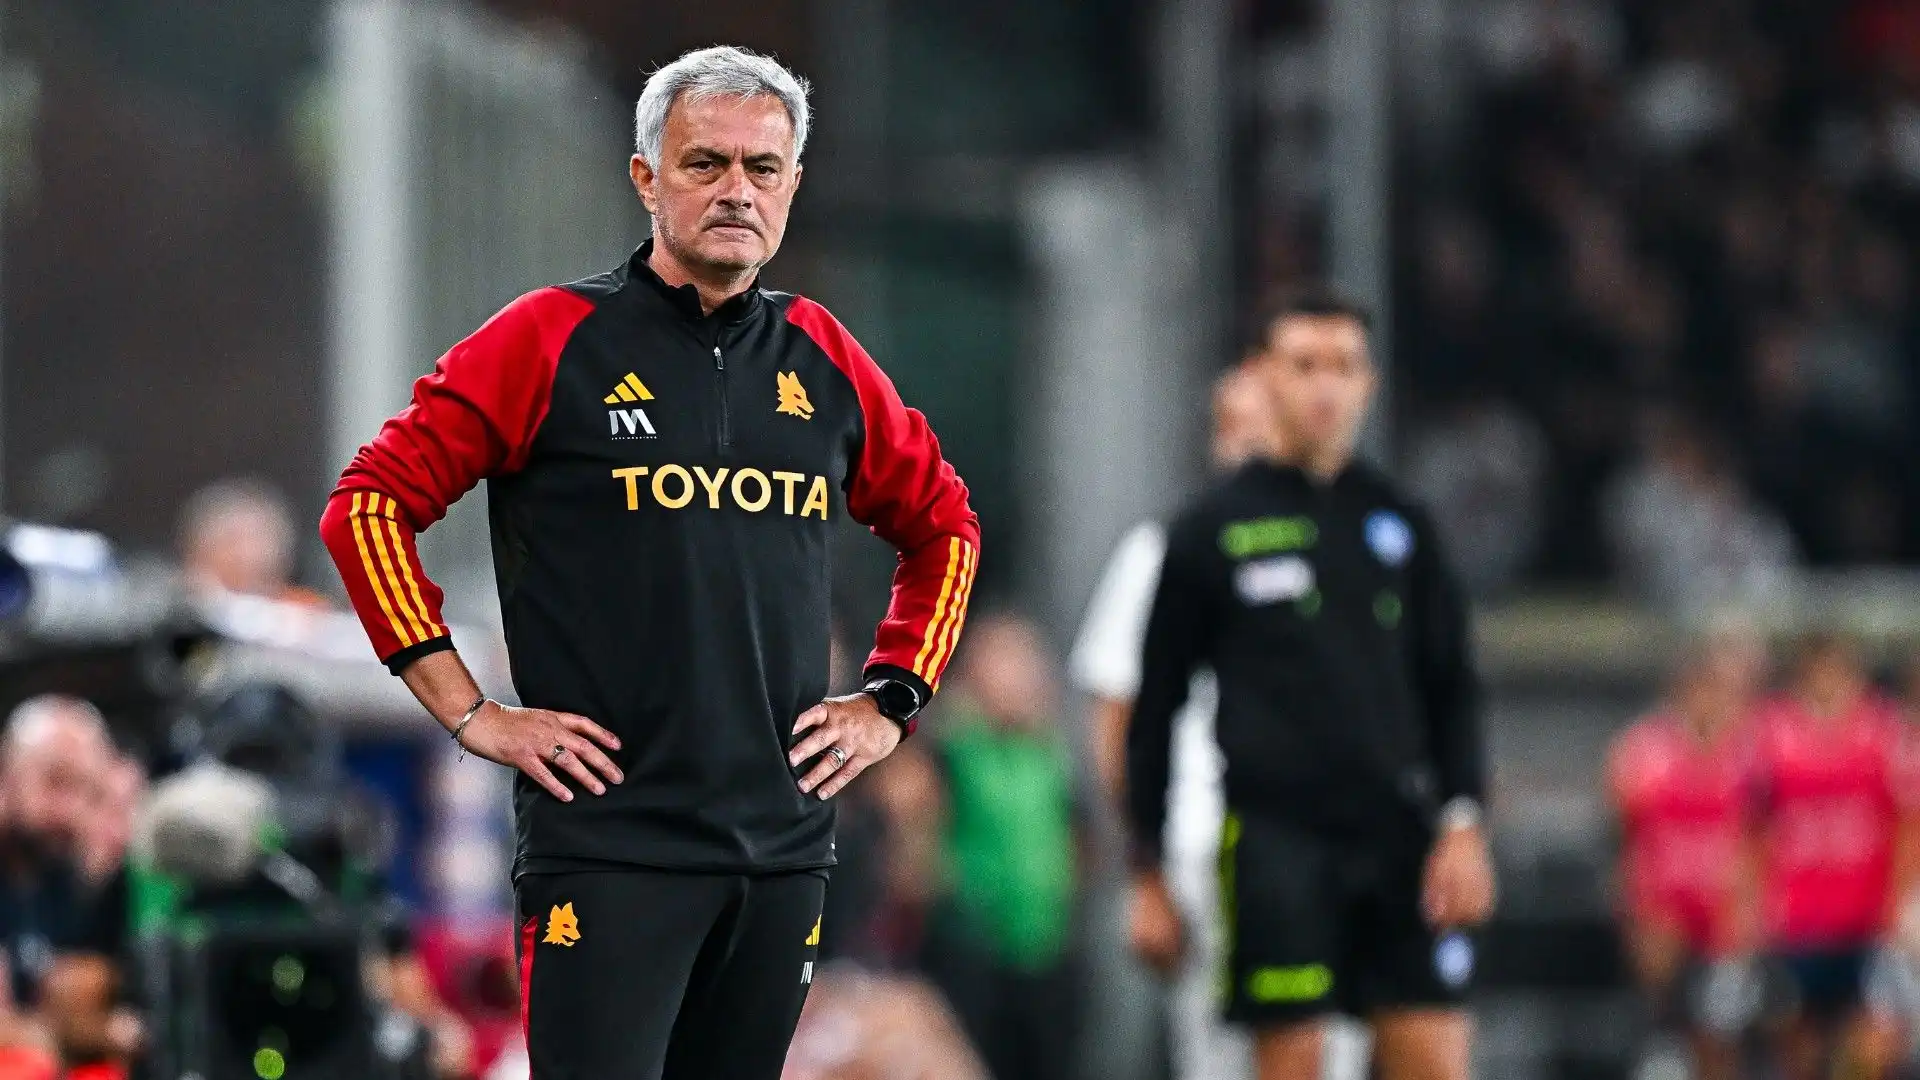 La difesa giallorossa è un grande problema ma non è l'unico: José Mourinho deve sistemare le cose se vuole restare alla Roma